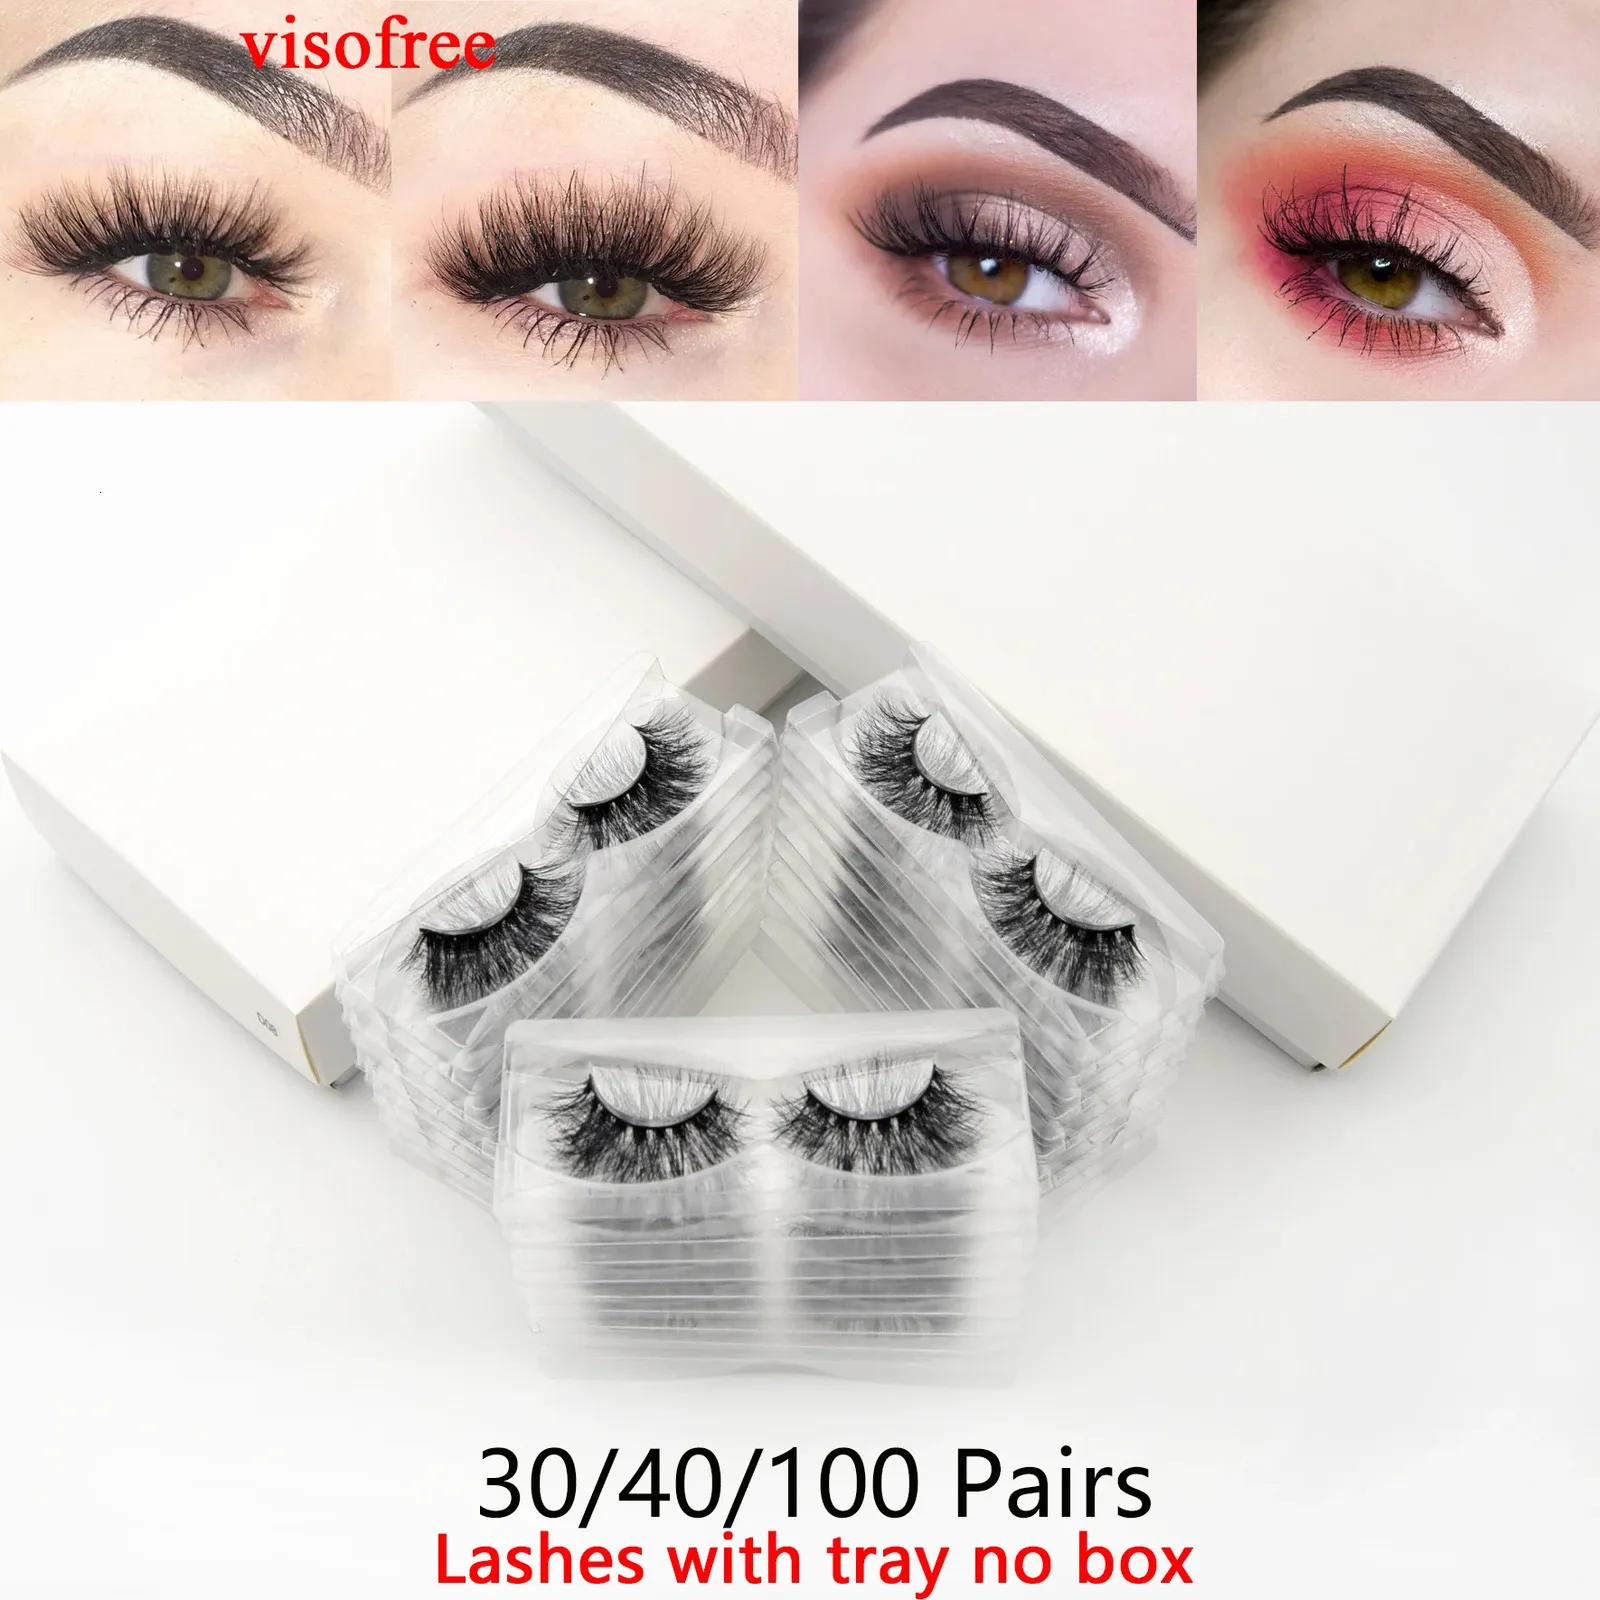 Visofree 30/40/100 paires de cils de vison 3D avec plateau sans boîte cils pleine bande faits à la main vison faux cils maquillage cils cilios 240113